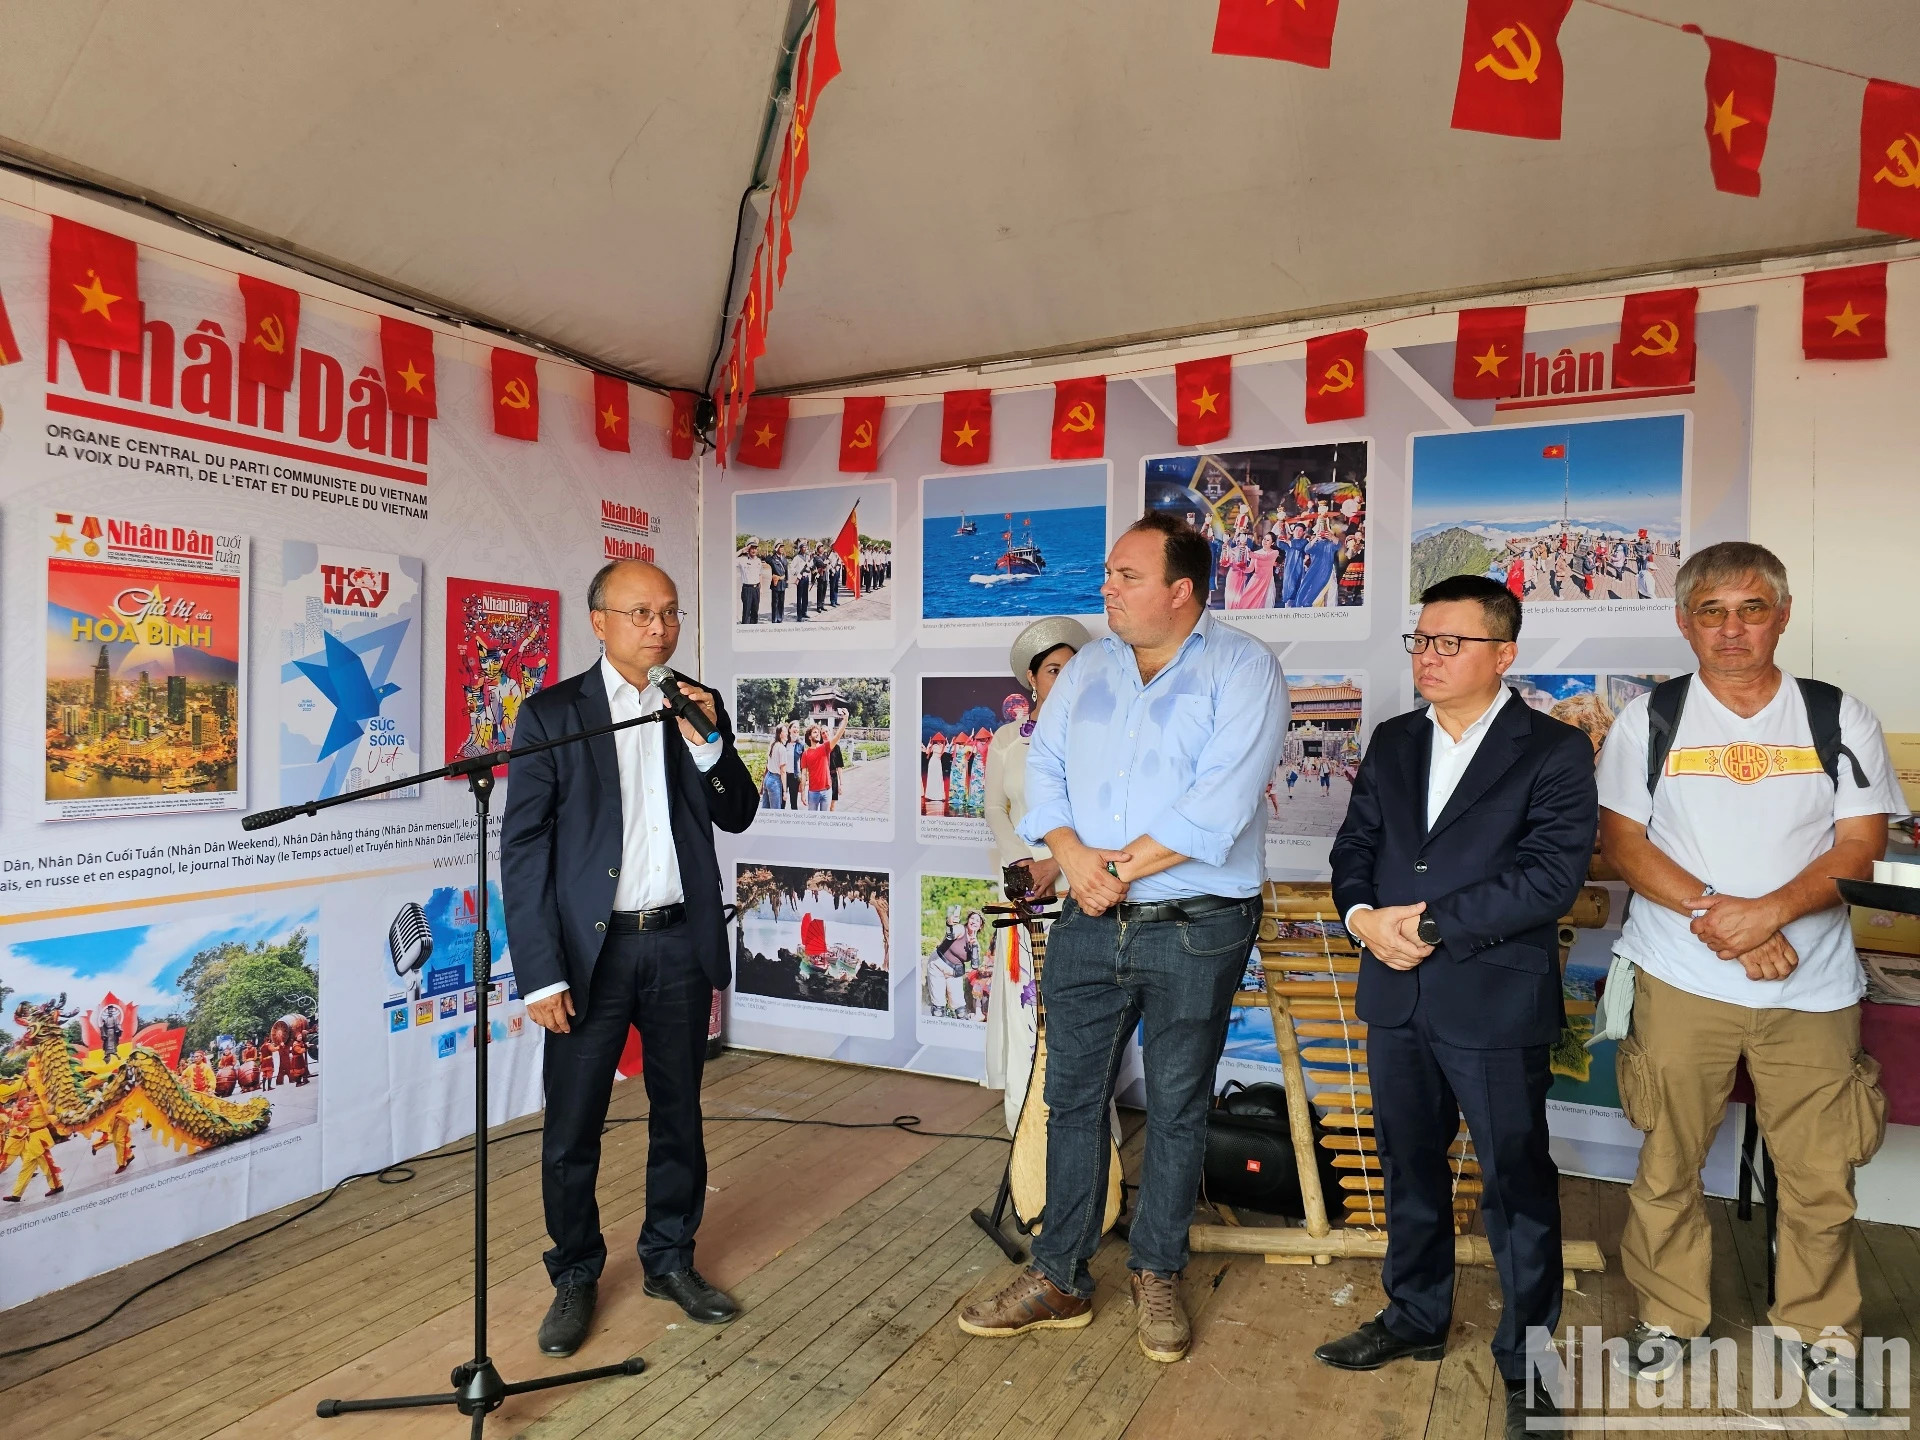 Đại sứ Việt Nam tại Pháp Đinh Toàn Thắng nhấn mạnh ý nghĩa của các hoạt động tại gian trưng bày .jpg